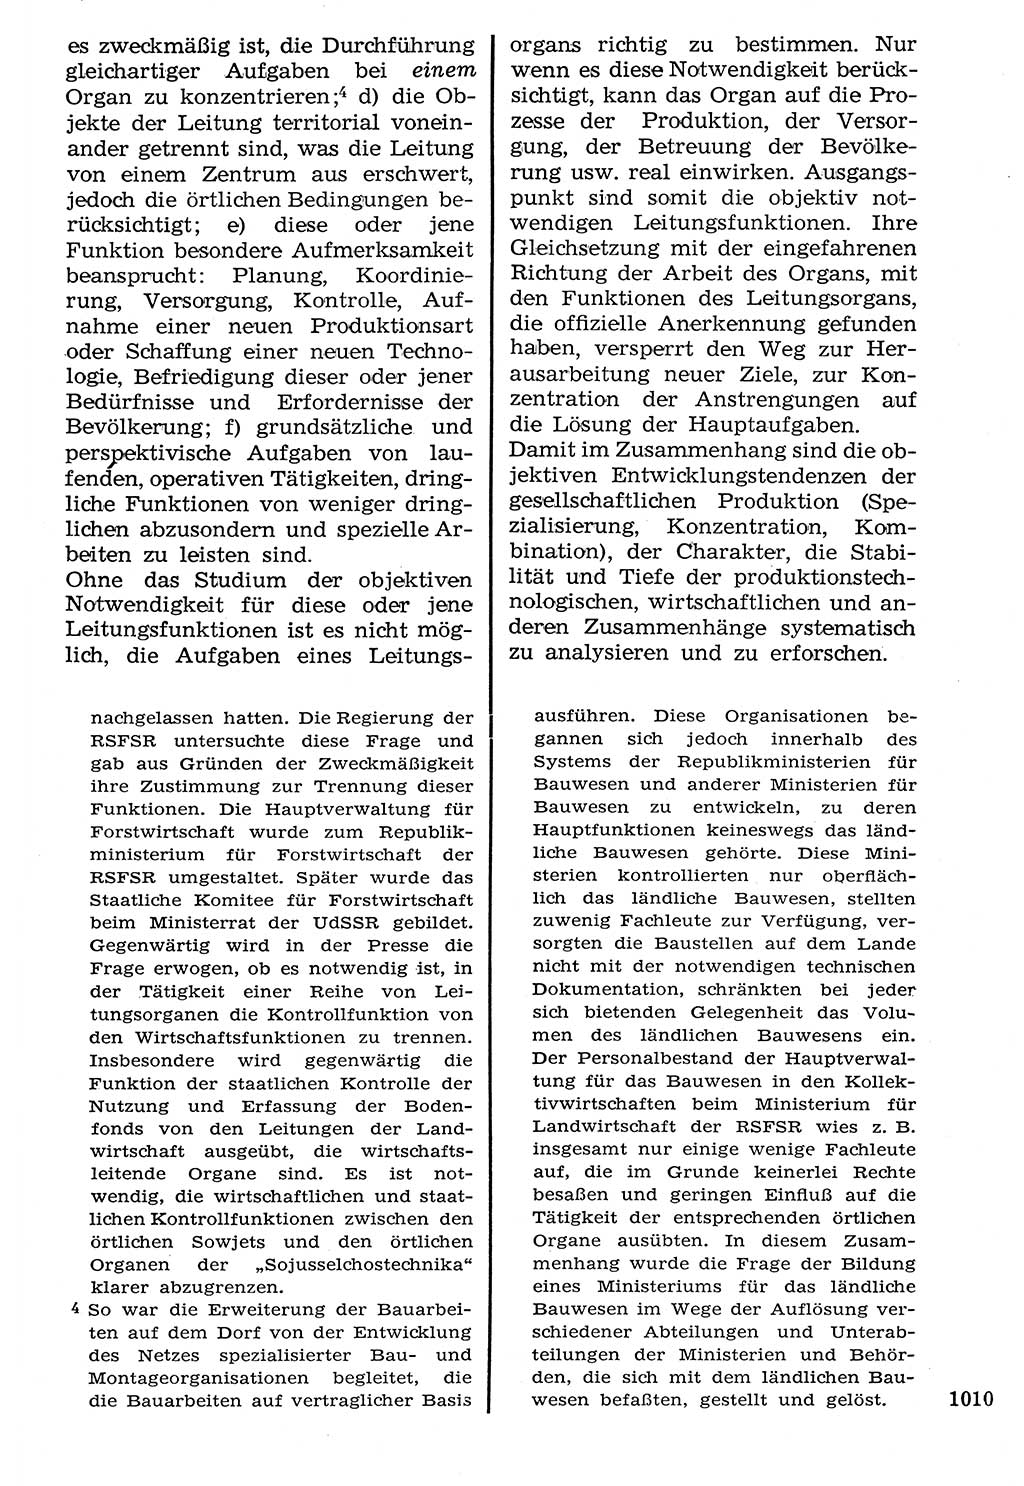 Staat und Recht (StuR), 17. Jahrgang [Deutsche Demokratische Republik (DDR)] 1968, Seite 1010 (StuR DDR 1968, S. 1010)